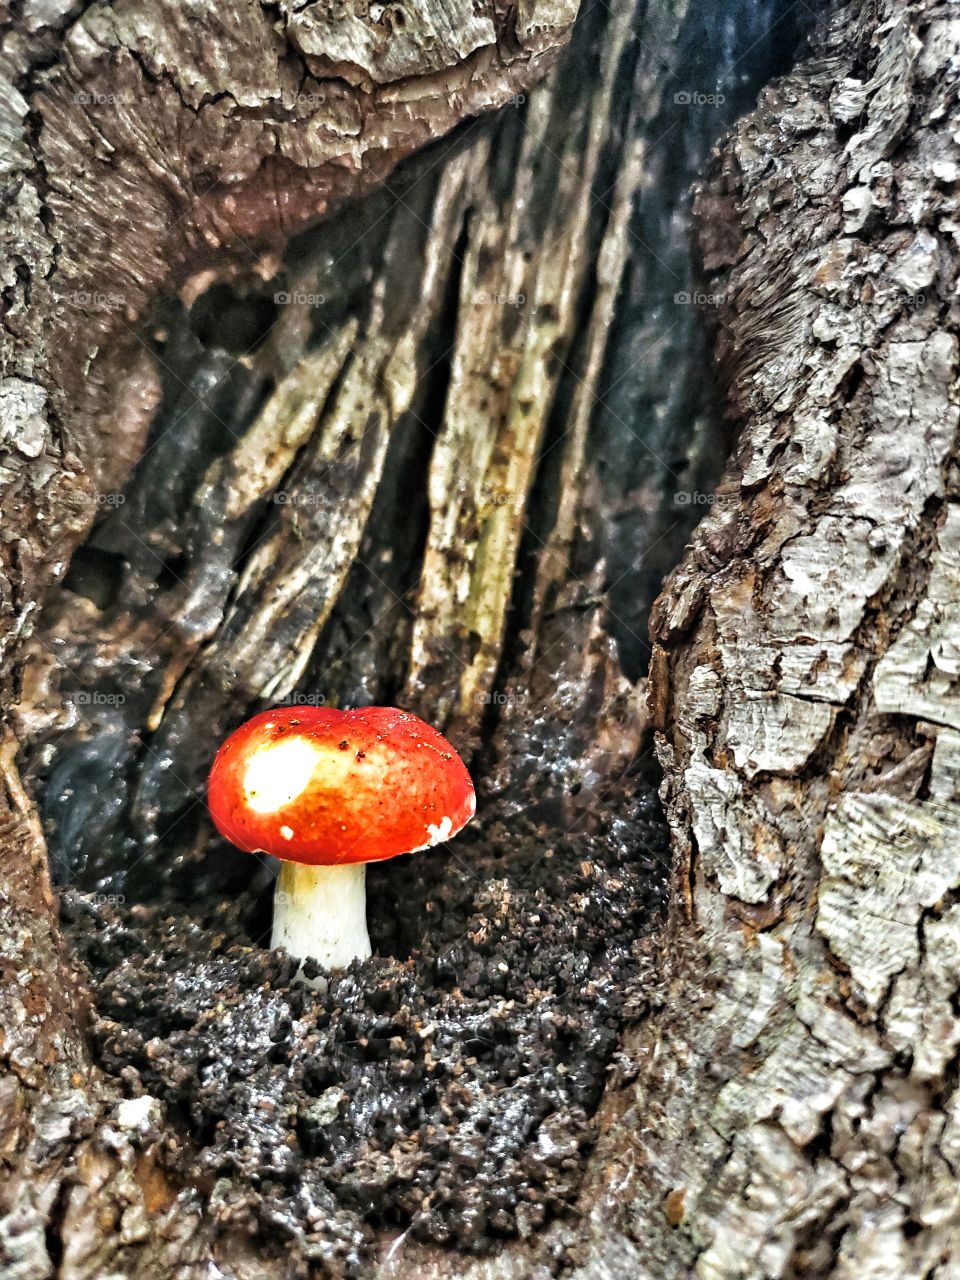 Colour red:
Mushrooms